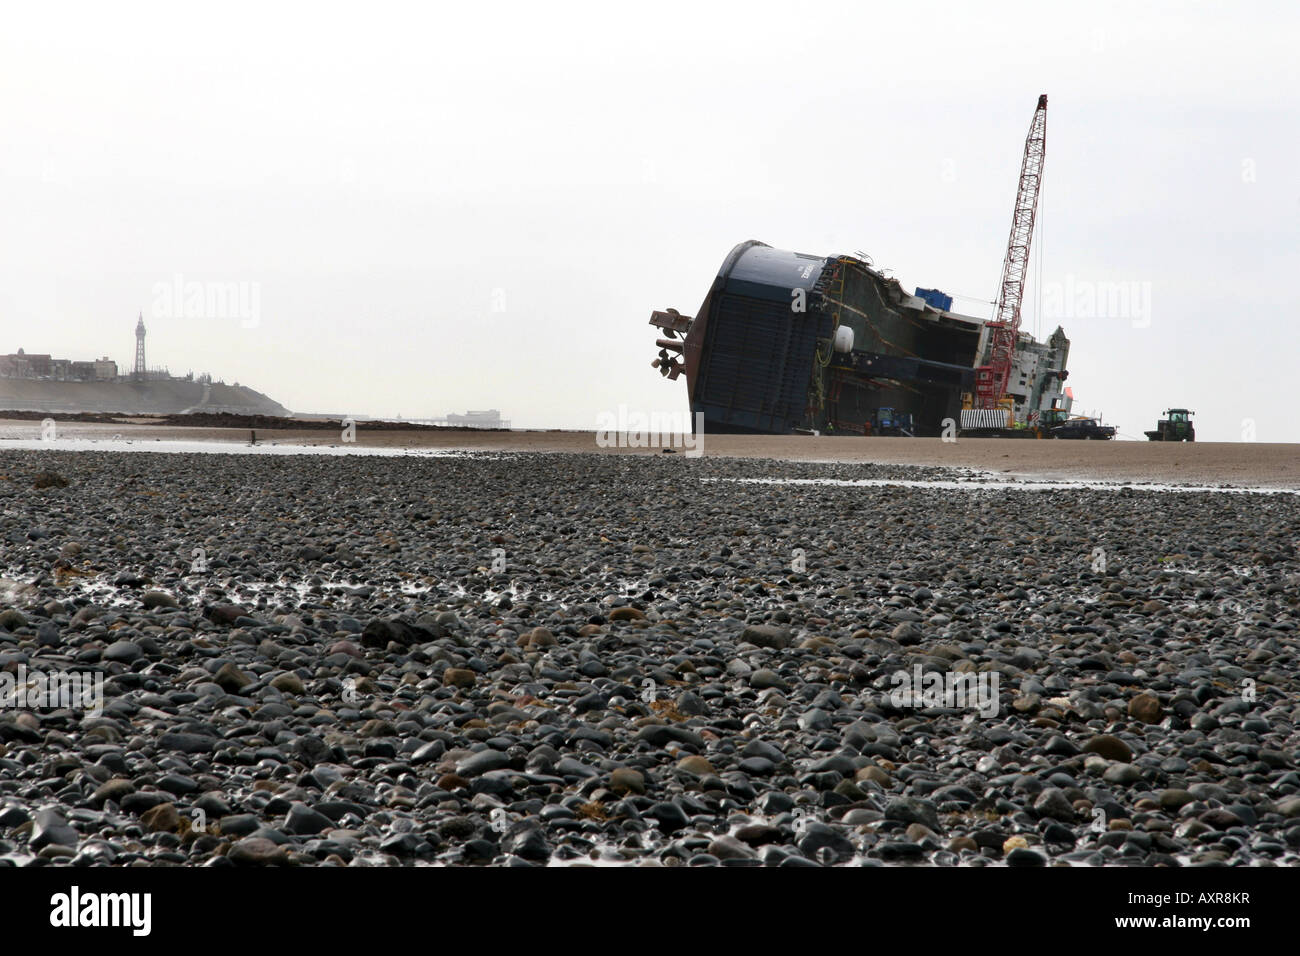 Reparatur Besatzungen kümmern sich um die gestrandeten Riverdance-Fähre liegen ganz auf ihrer Seite und versinken in den Sand. Stockfoto